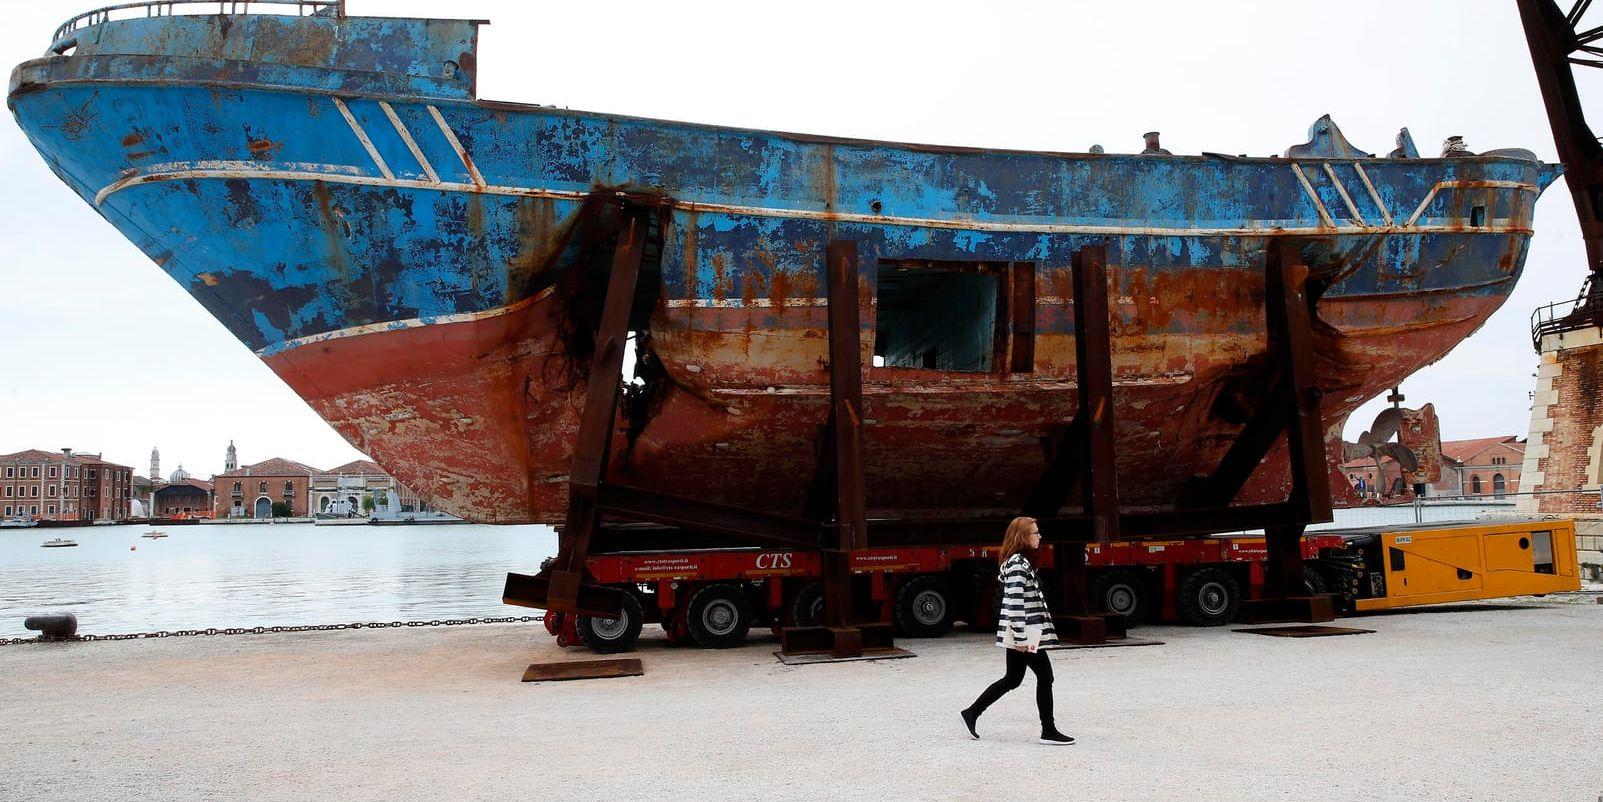 Båten Barca Nostra förlista på Medelhavet 2015 med över 700 migranter och flyktingar ombord – varav bara ett 20-tal överlevde. I år har vraket väckt stor uppmärksamhet när det ställts ut av schweiziske konstnären Christoph Büchel under biennalen i Venedig. Arkivfoto.